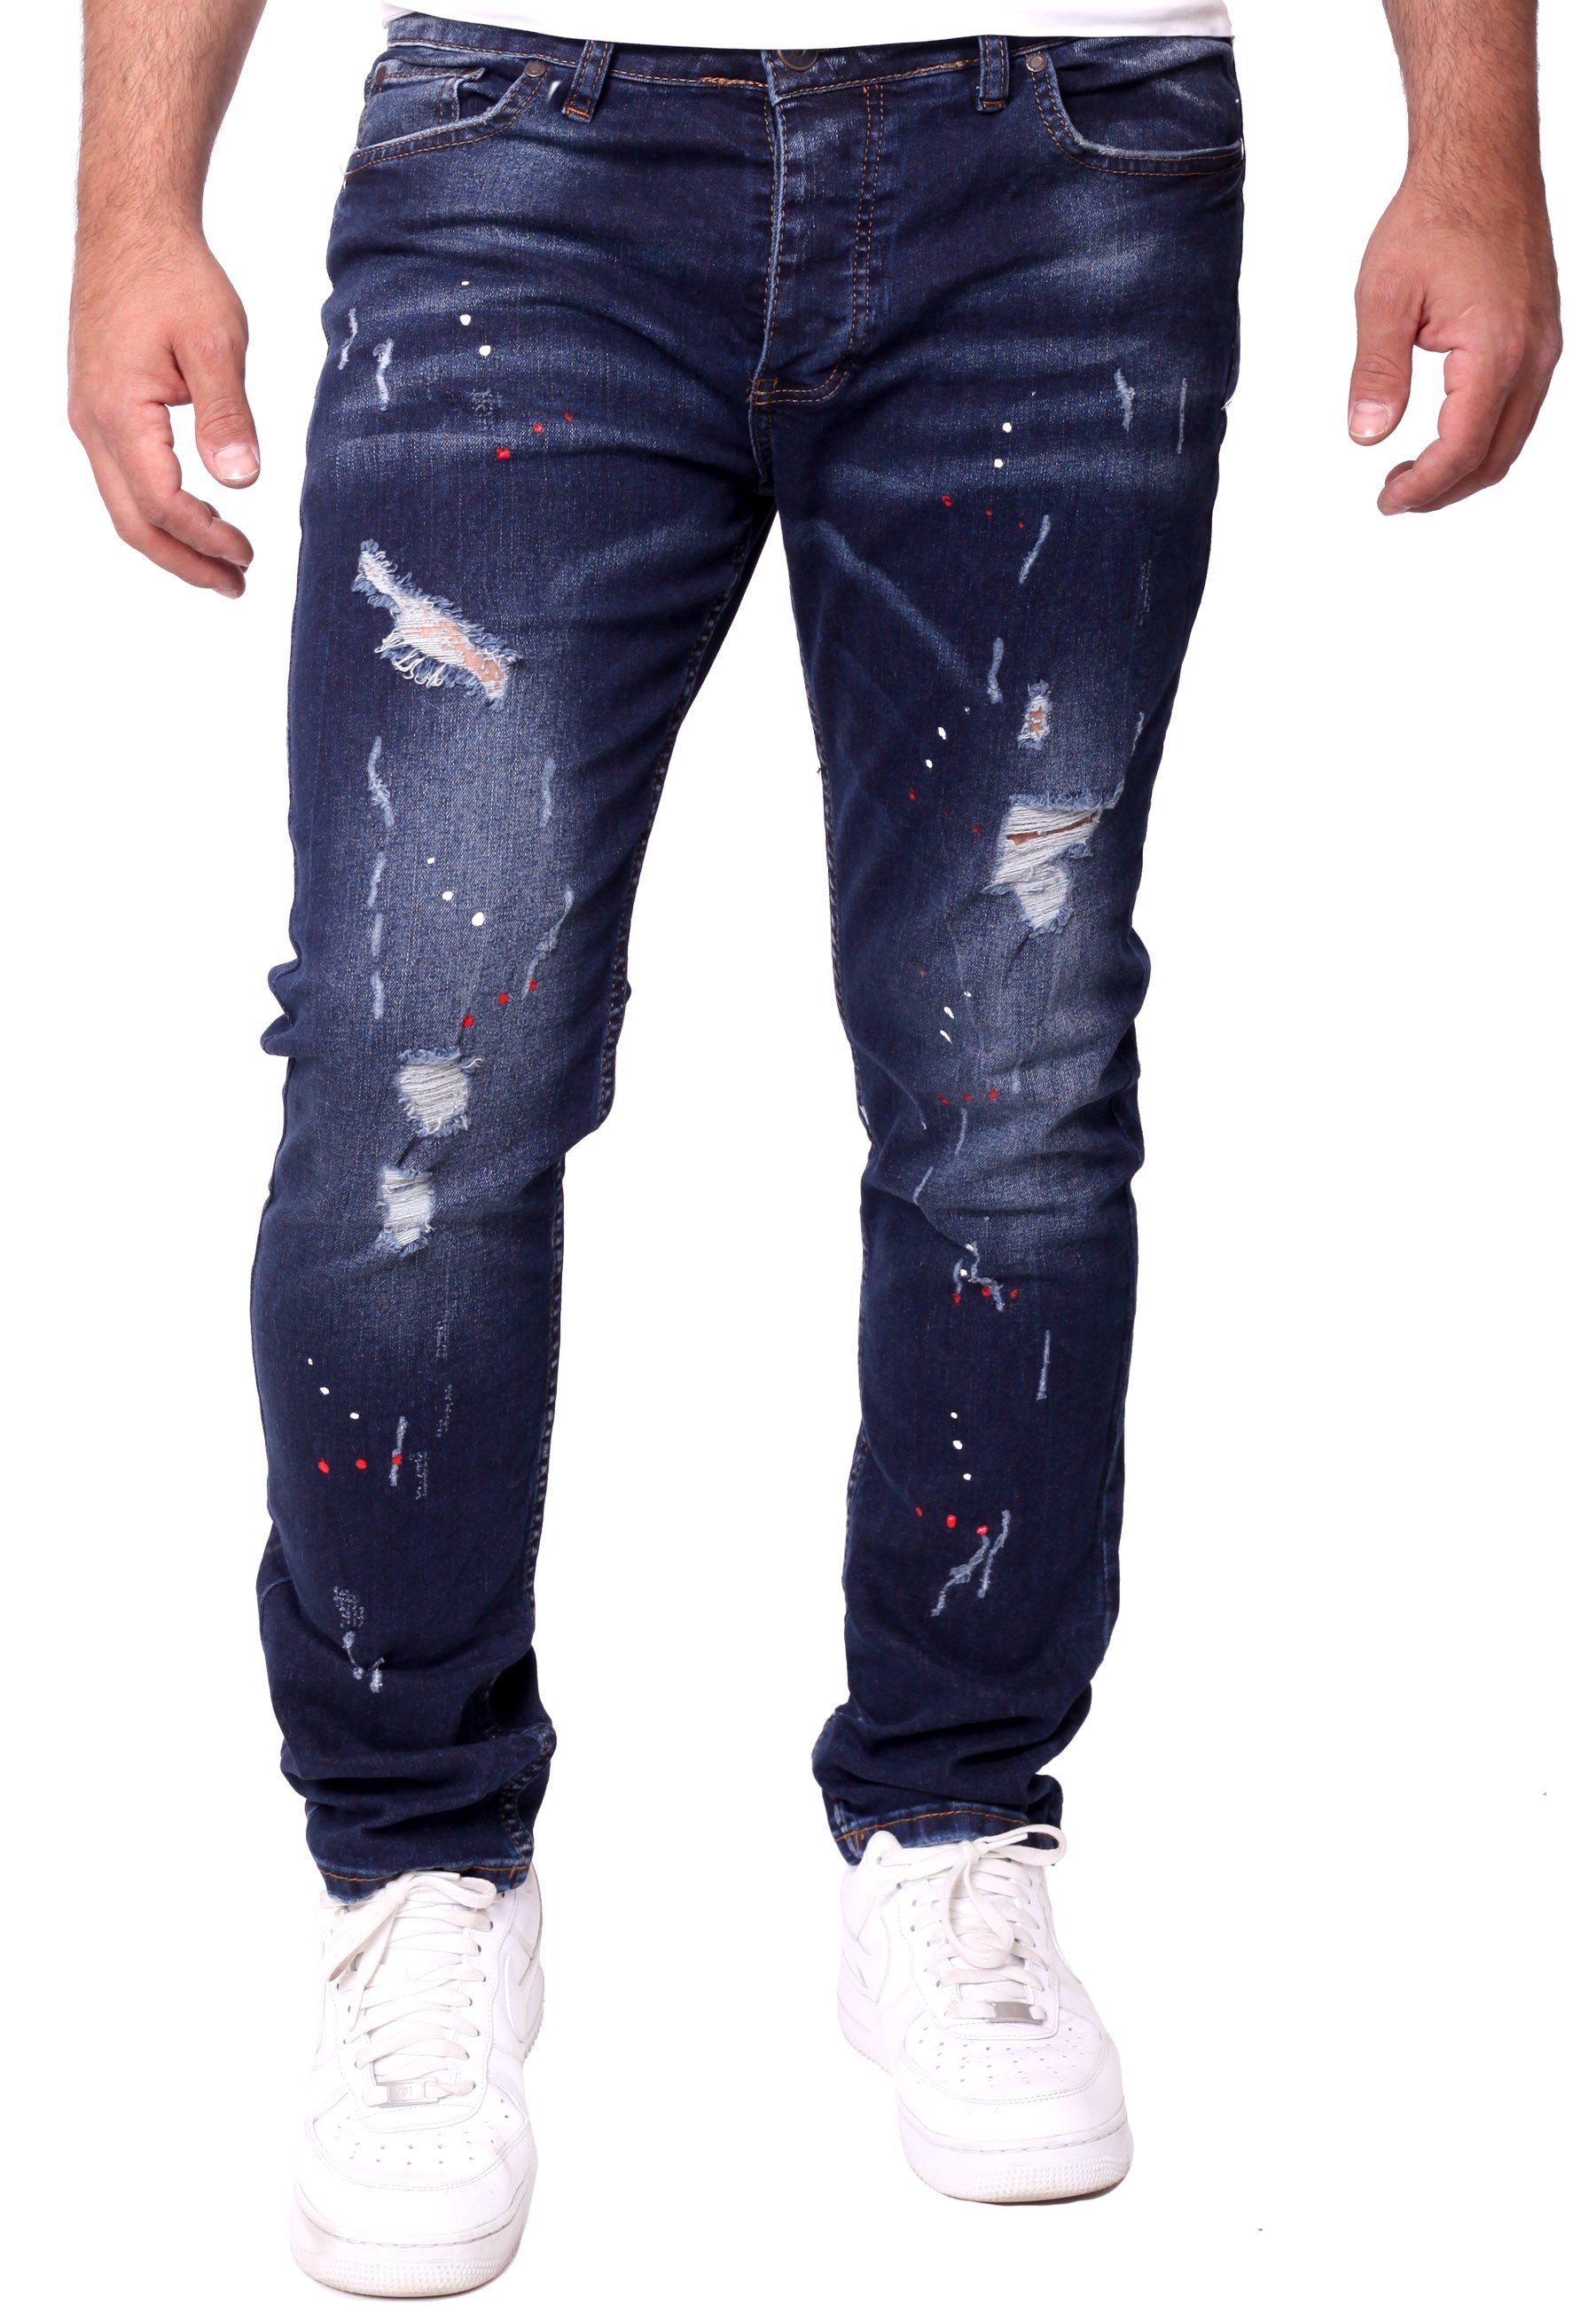 Reslad Destroyed-Jeans Reslad Jeans Herren Color-Splashes Stretch Denim Destroyed Jeanshose Destroyed Jeanshose Männer-Hose Slim Fit dunkelblau